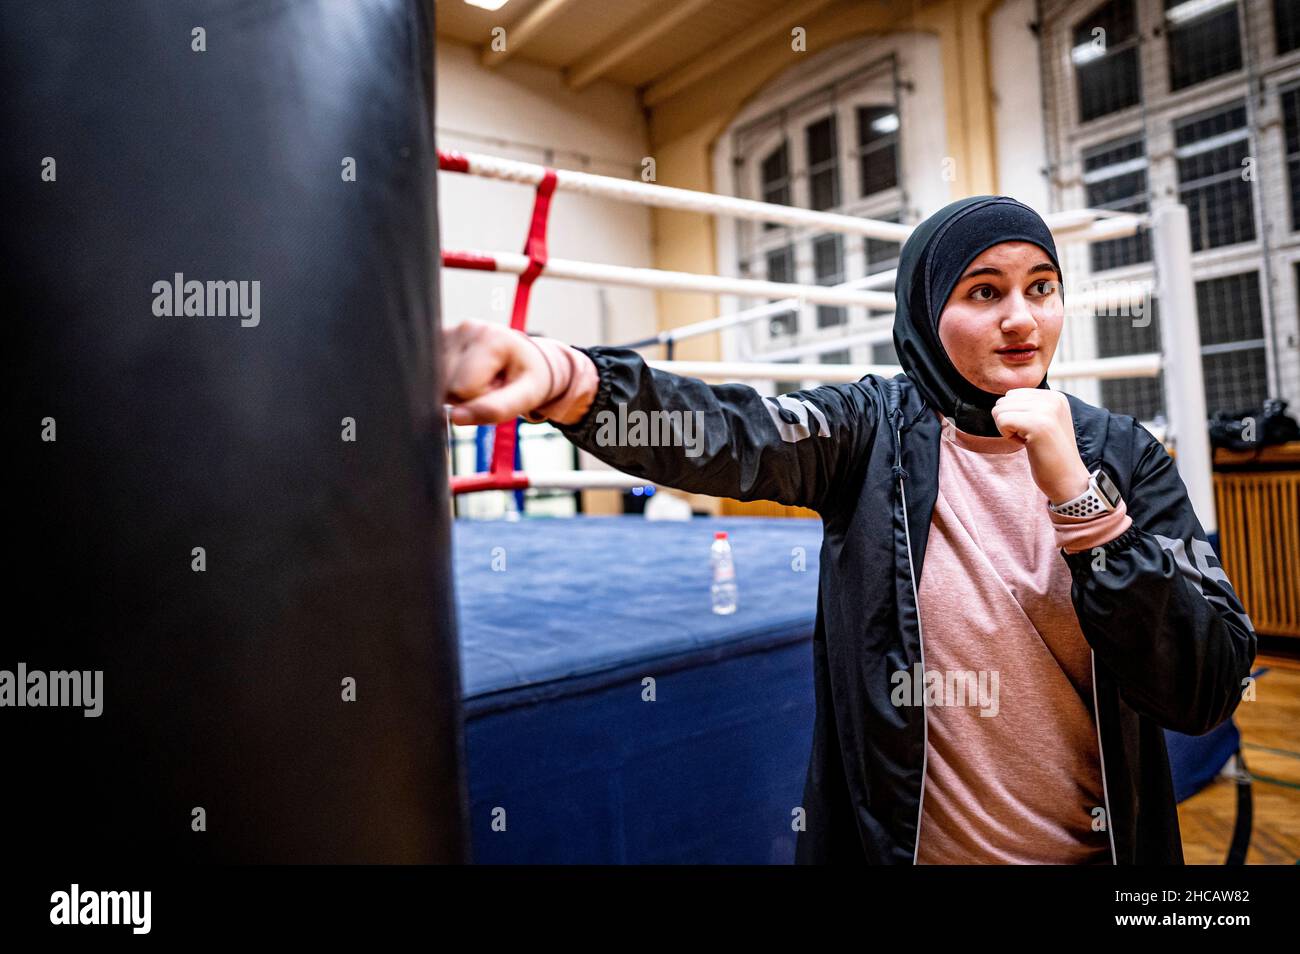 16 décembre 2021, Berlin: L'entraîneur de boxe Doha Taha Beydoun se tient dans la pratique de boxe de gym.Elle n'a que 20 ans.Marié.Quatre mois de grossesse.Musulman et un entraîneur de boxe.Ses parents ont émigré du Liban vers l'Allemagne quand elle était bébé.Doha Taha Beydoun semble 'trange' à certains, dit-elle, parce que sa nationalité, sa religion et son sport ne correspondent pas.D'autres la voient comme un modèle, comme elle le dit elle-même."Je lutte contre tous les préjugés", se donne la jeune femme avec confiance.(À dpa 'Mussim, femme, entraîneur de boxe - 'Je lutte contre tous les préjugés') photo: Fabian Sommer/dpa Banque D'Images